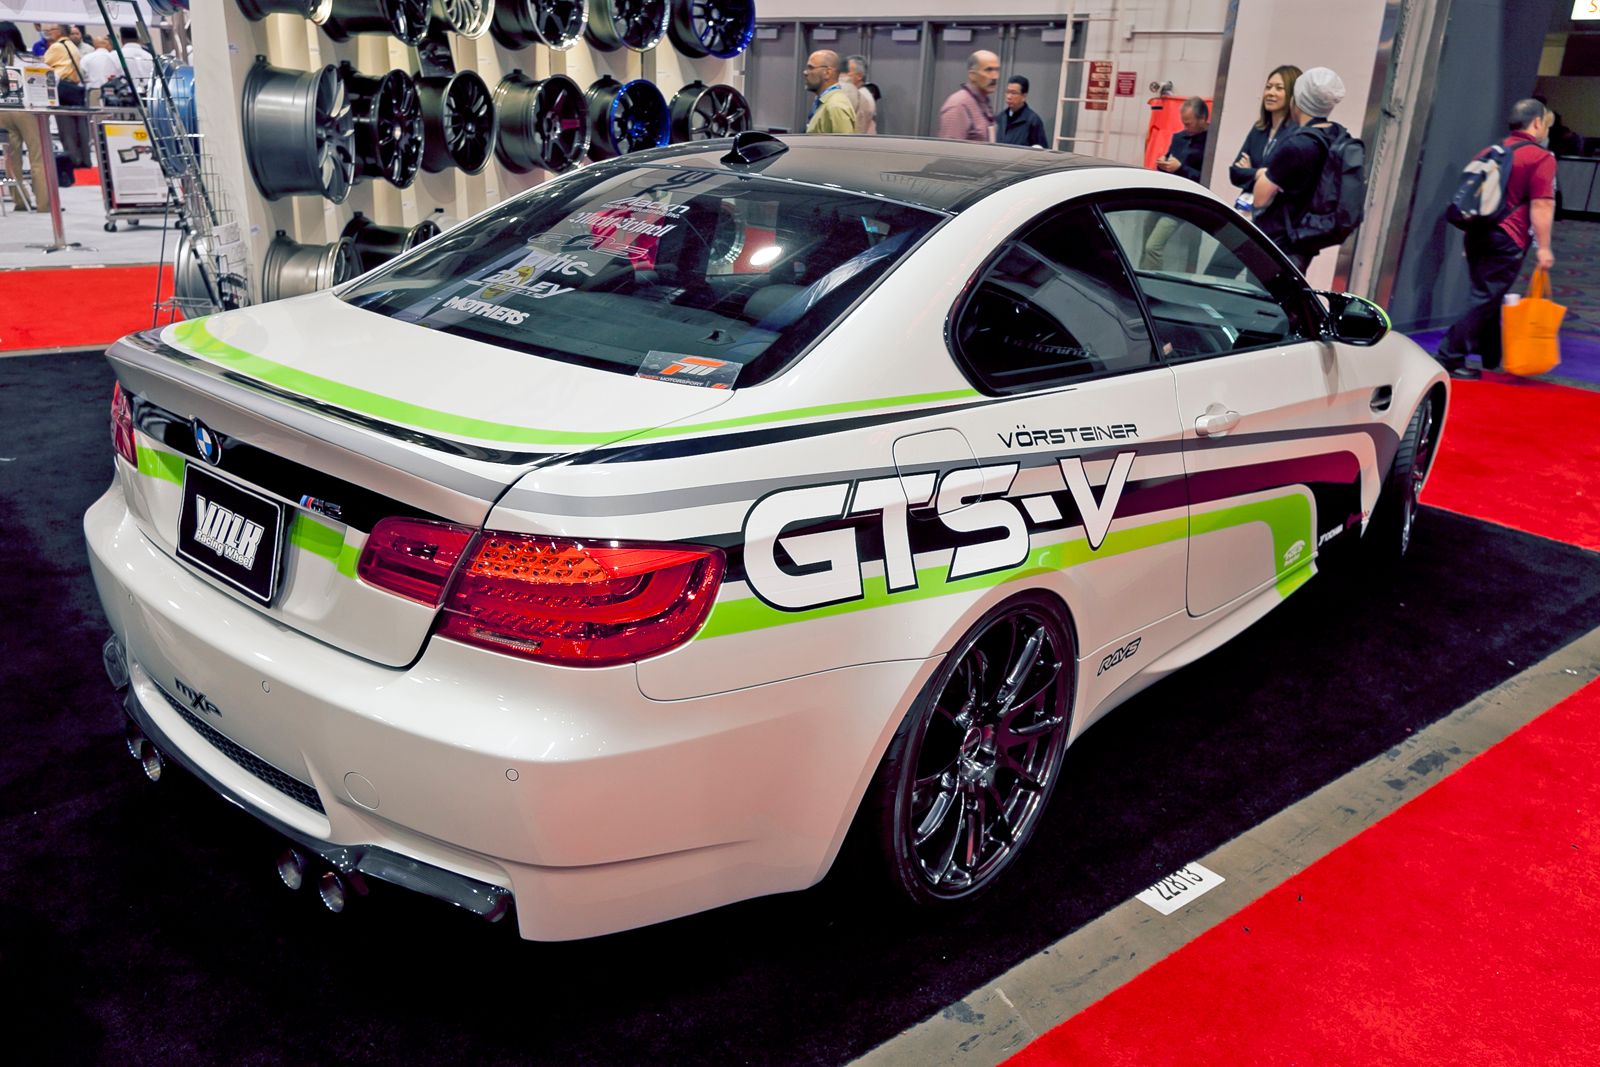 2011 BMW M3 GTS-V by Vorsteiner